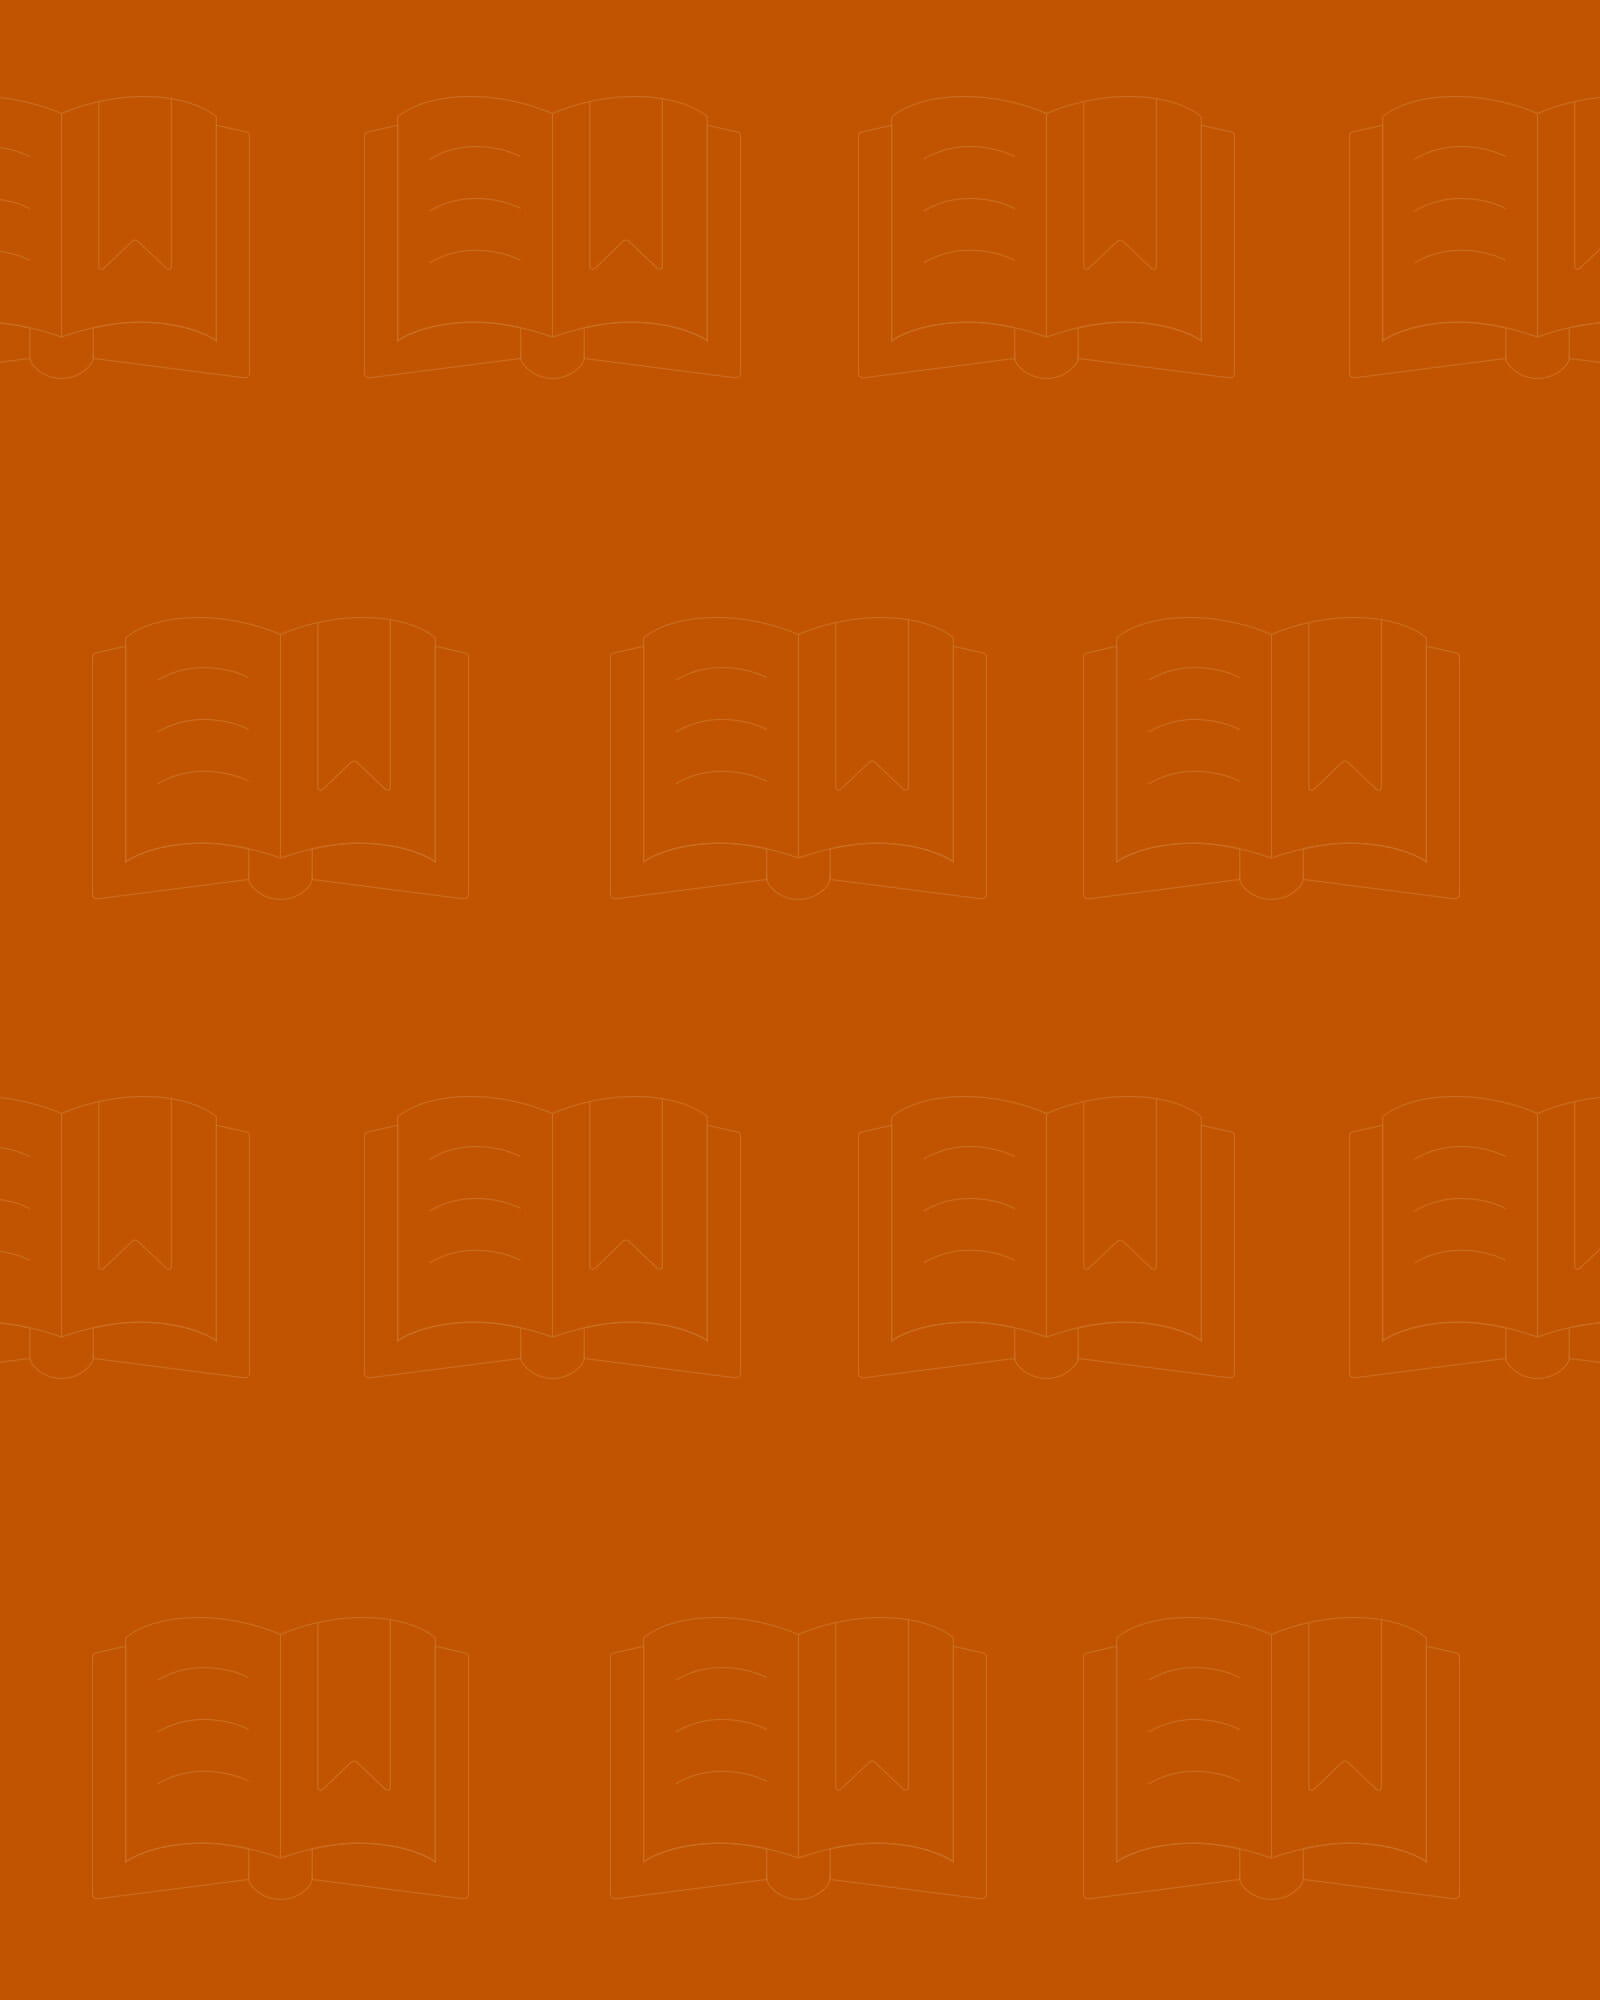 orange background image with books